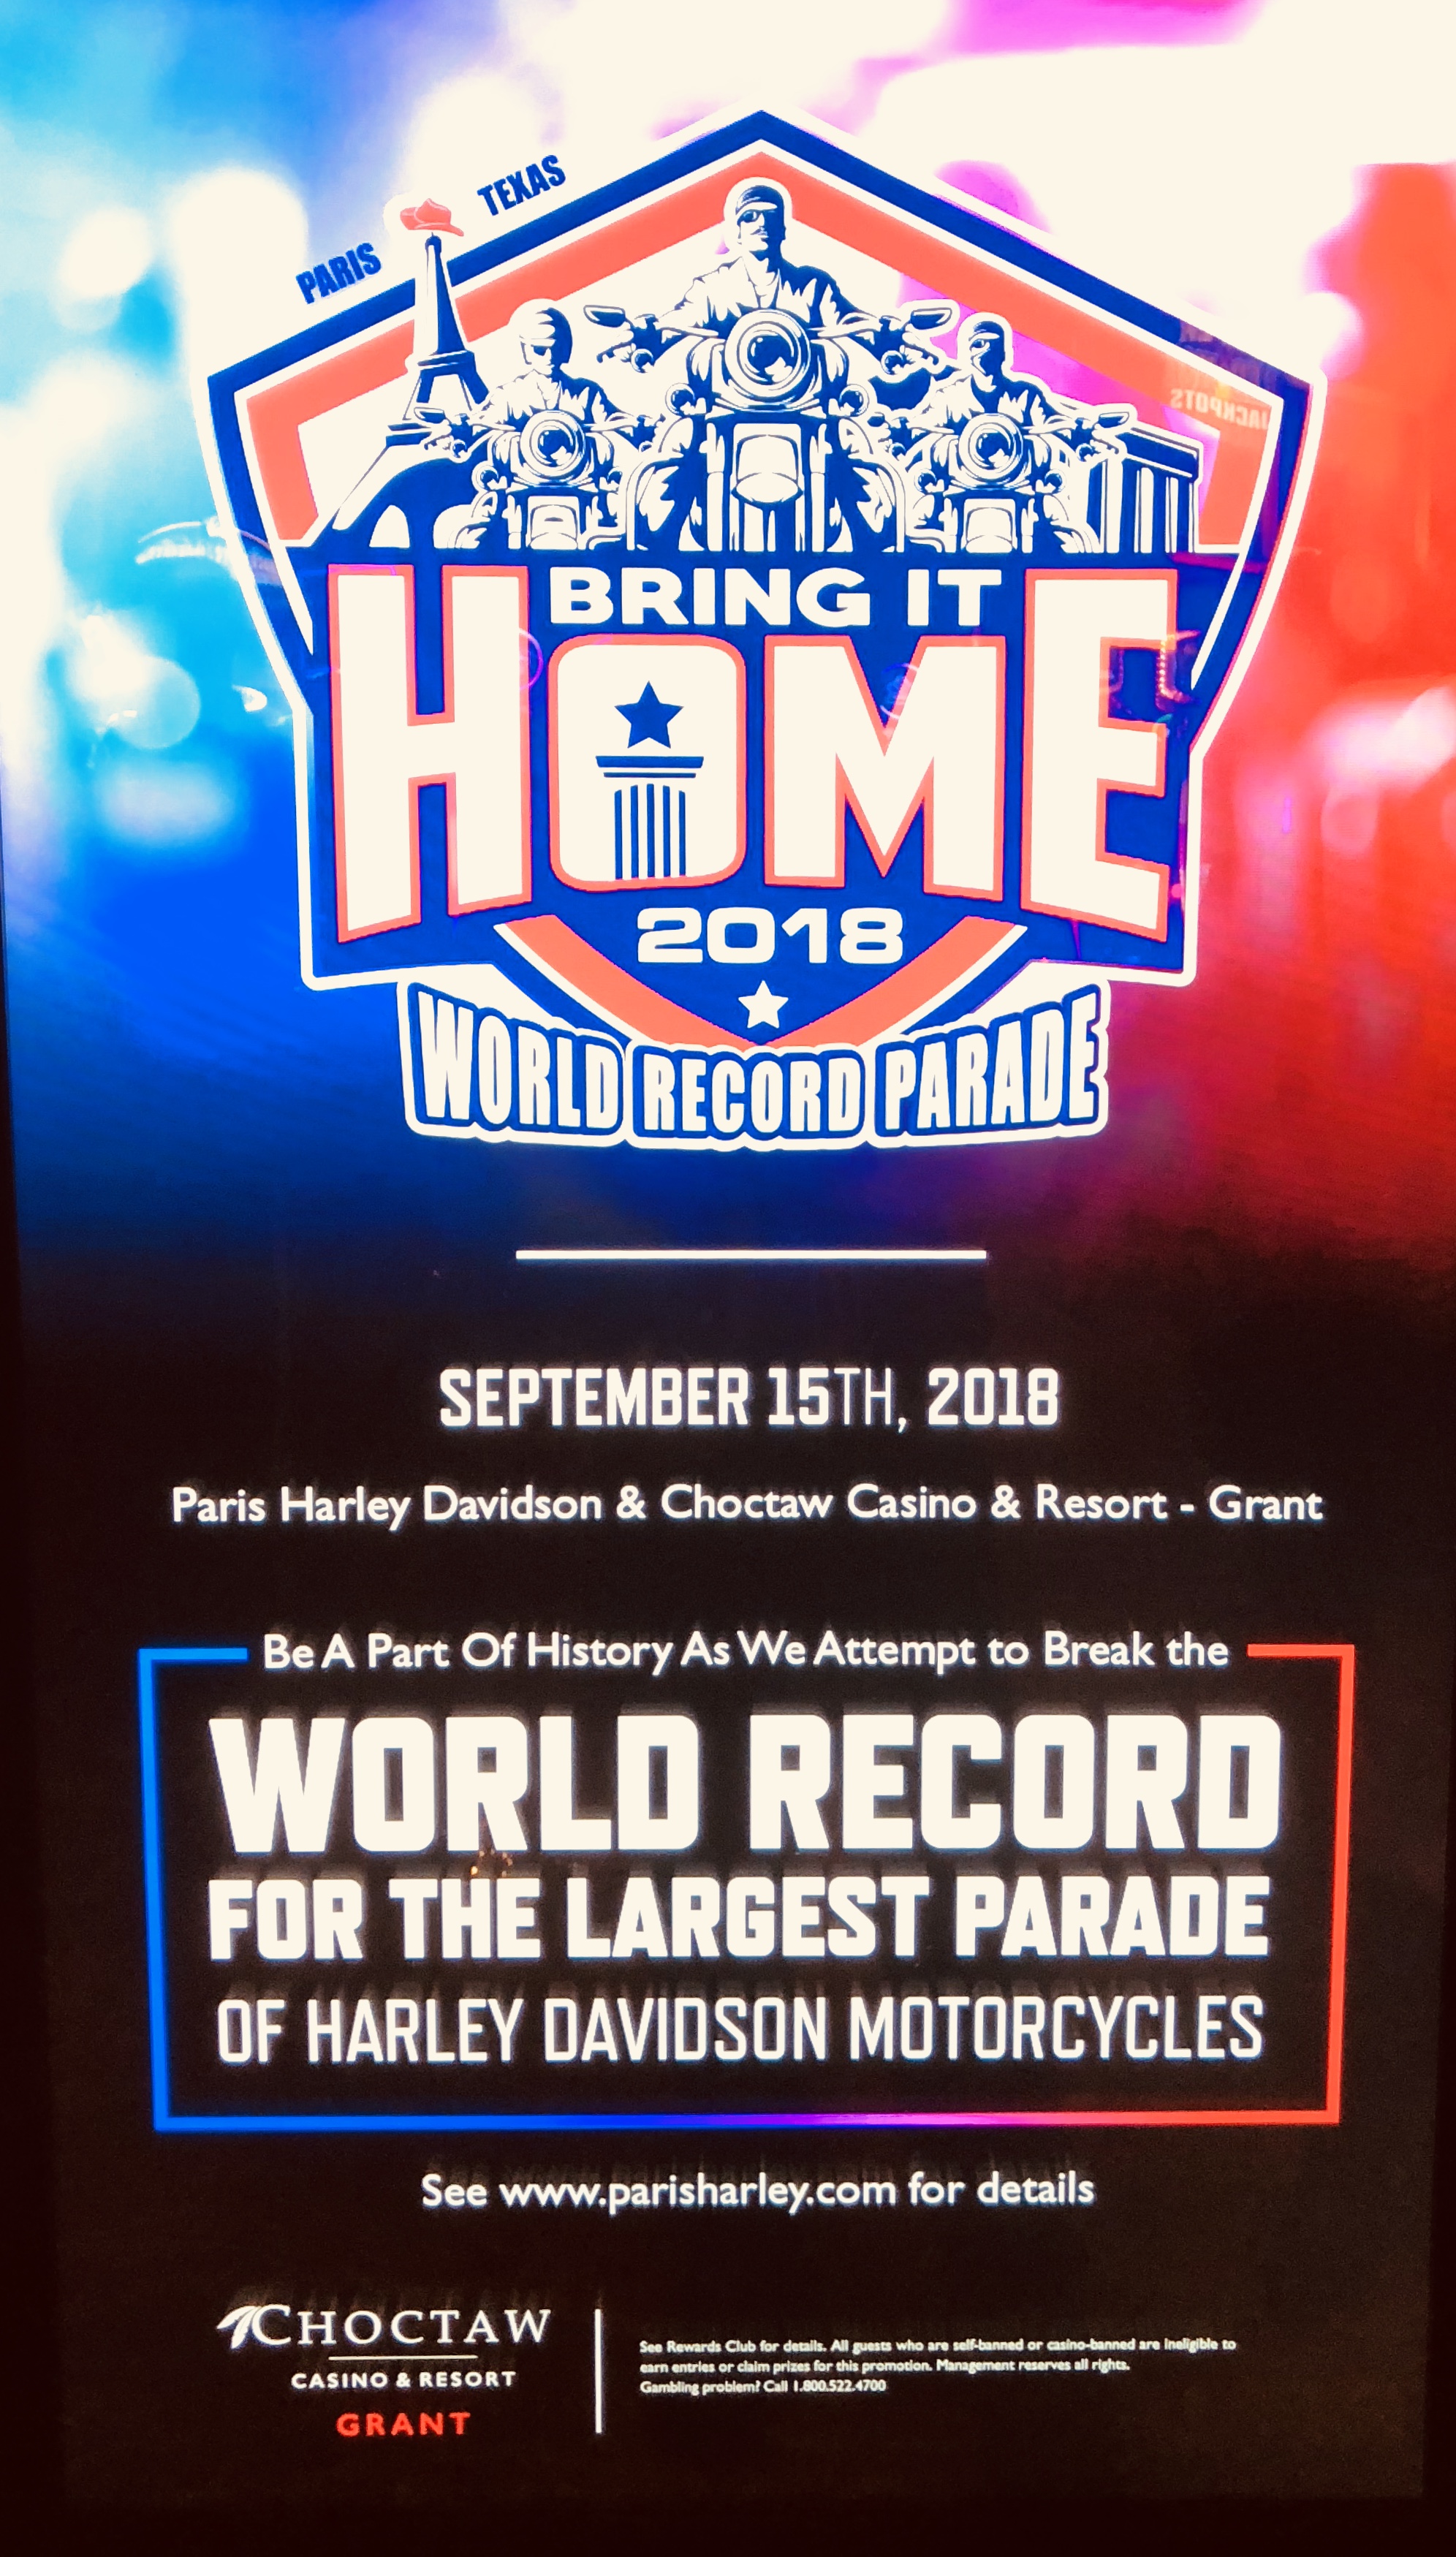 "Harley Davidson World Record Parade"